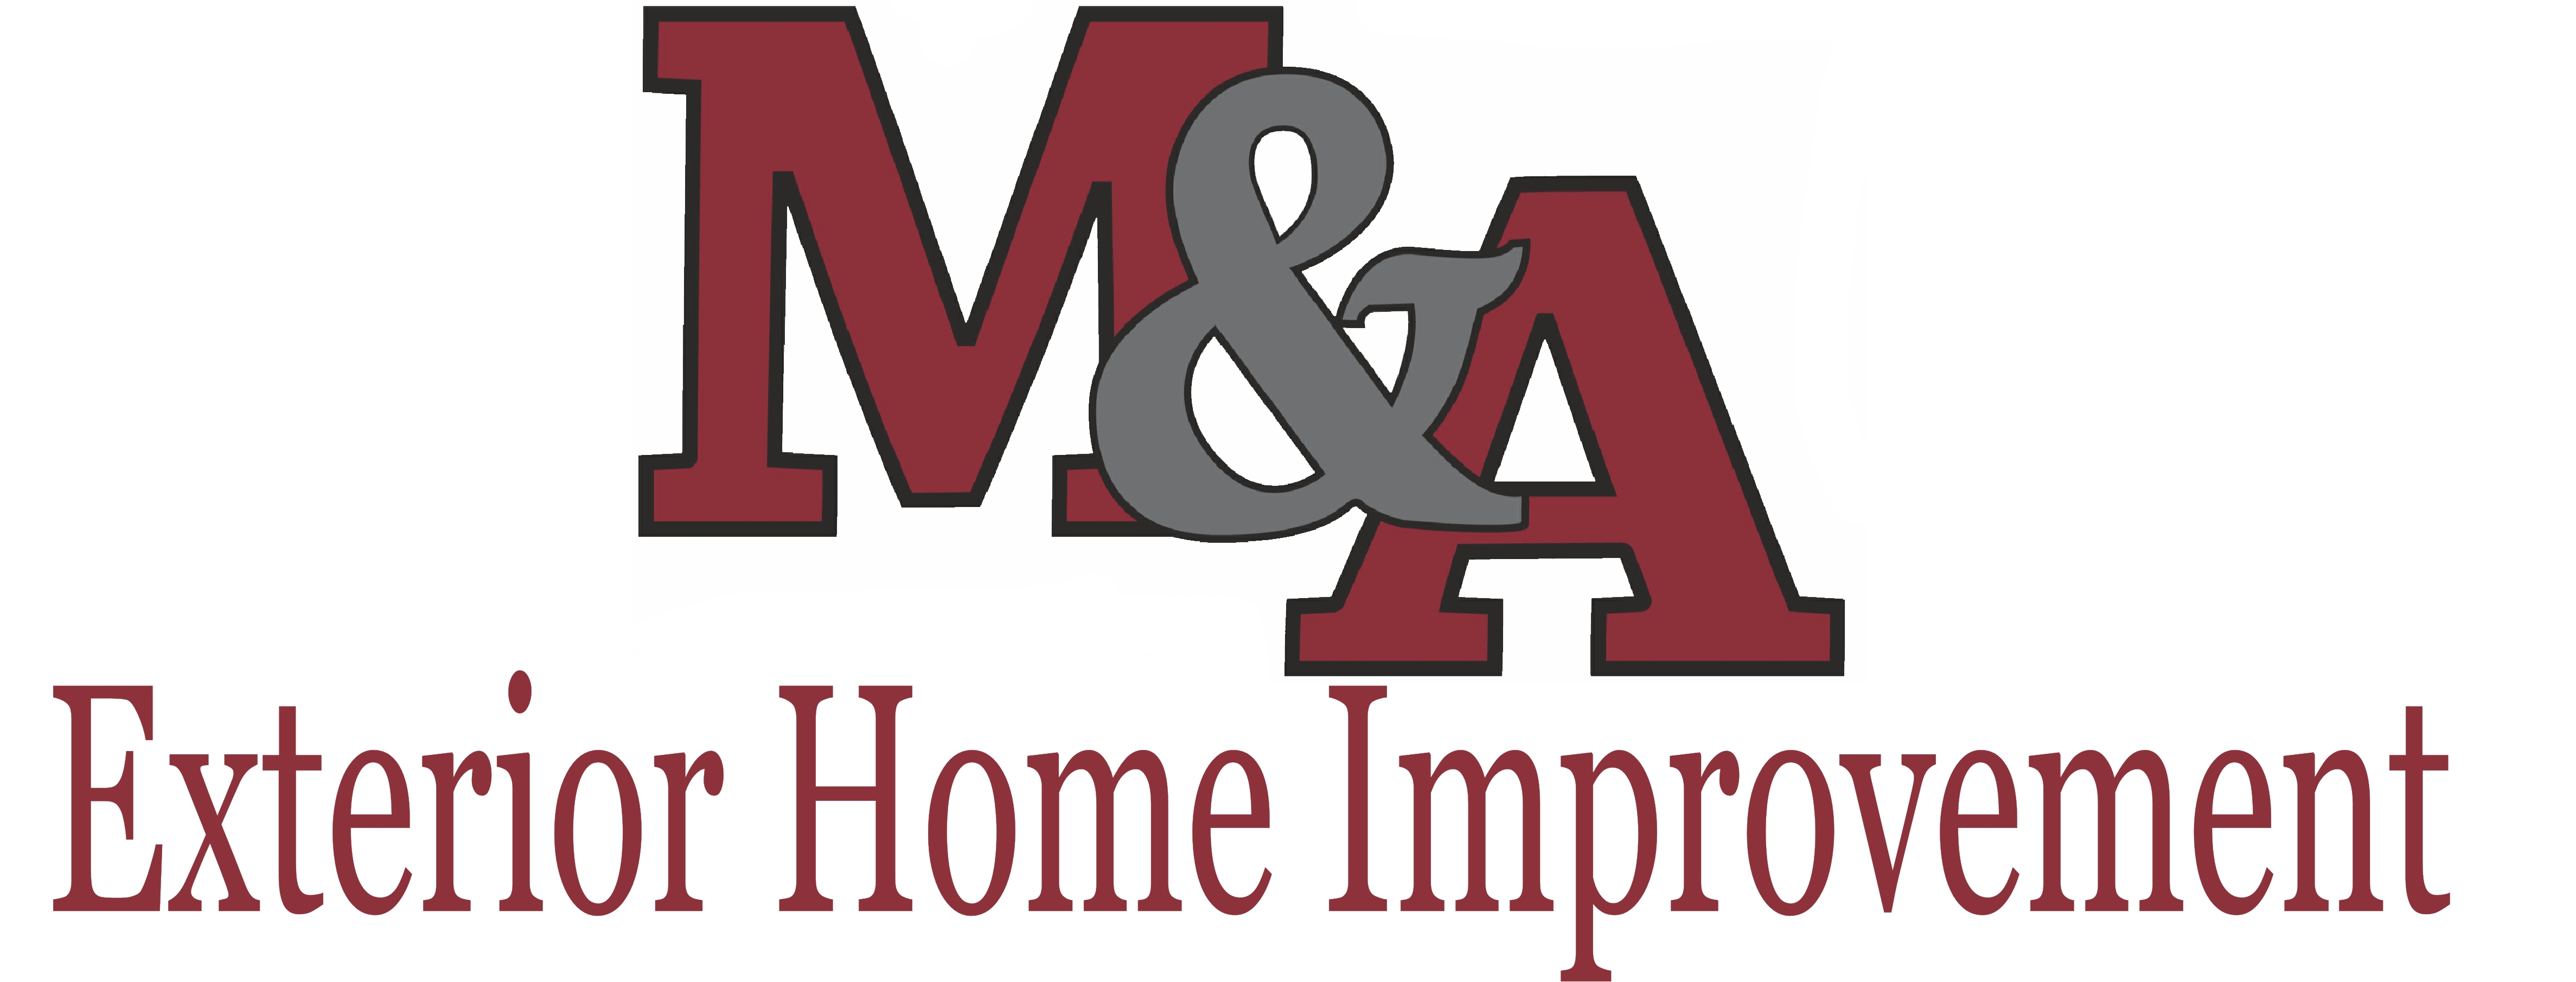 M&A Roof Home Improvement VA